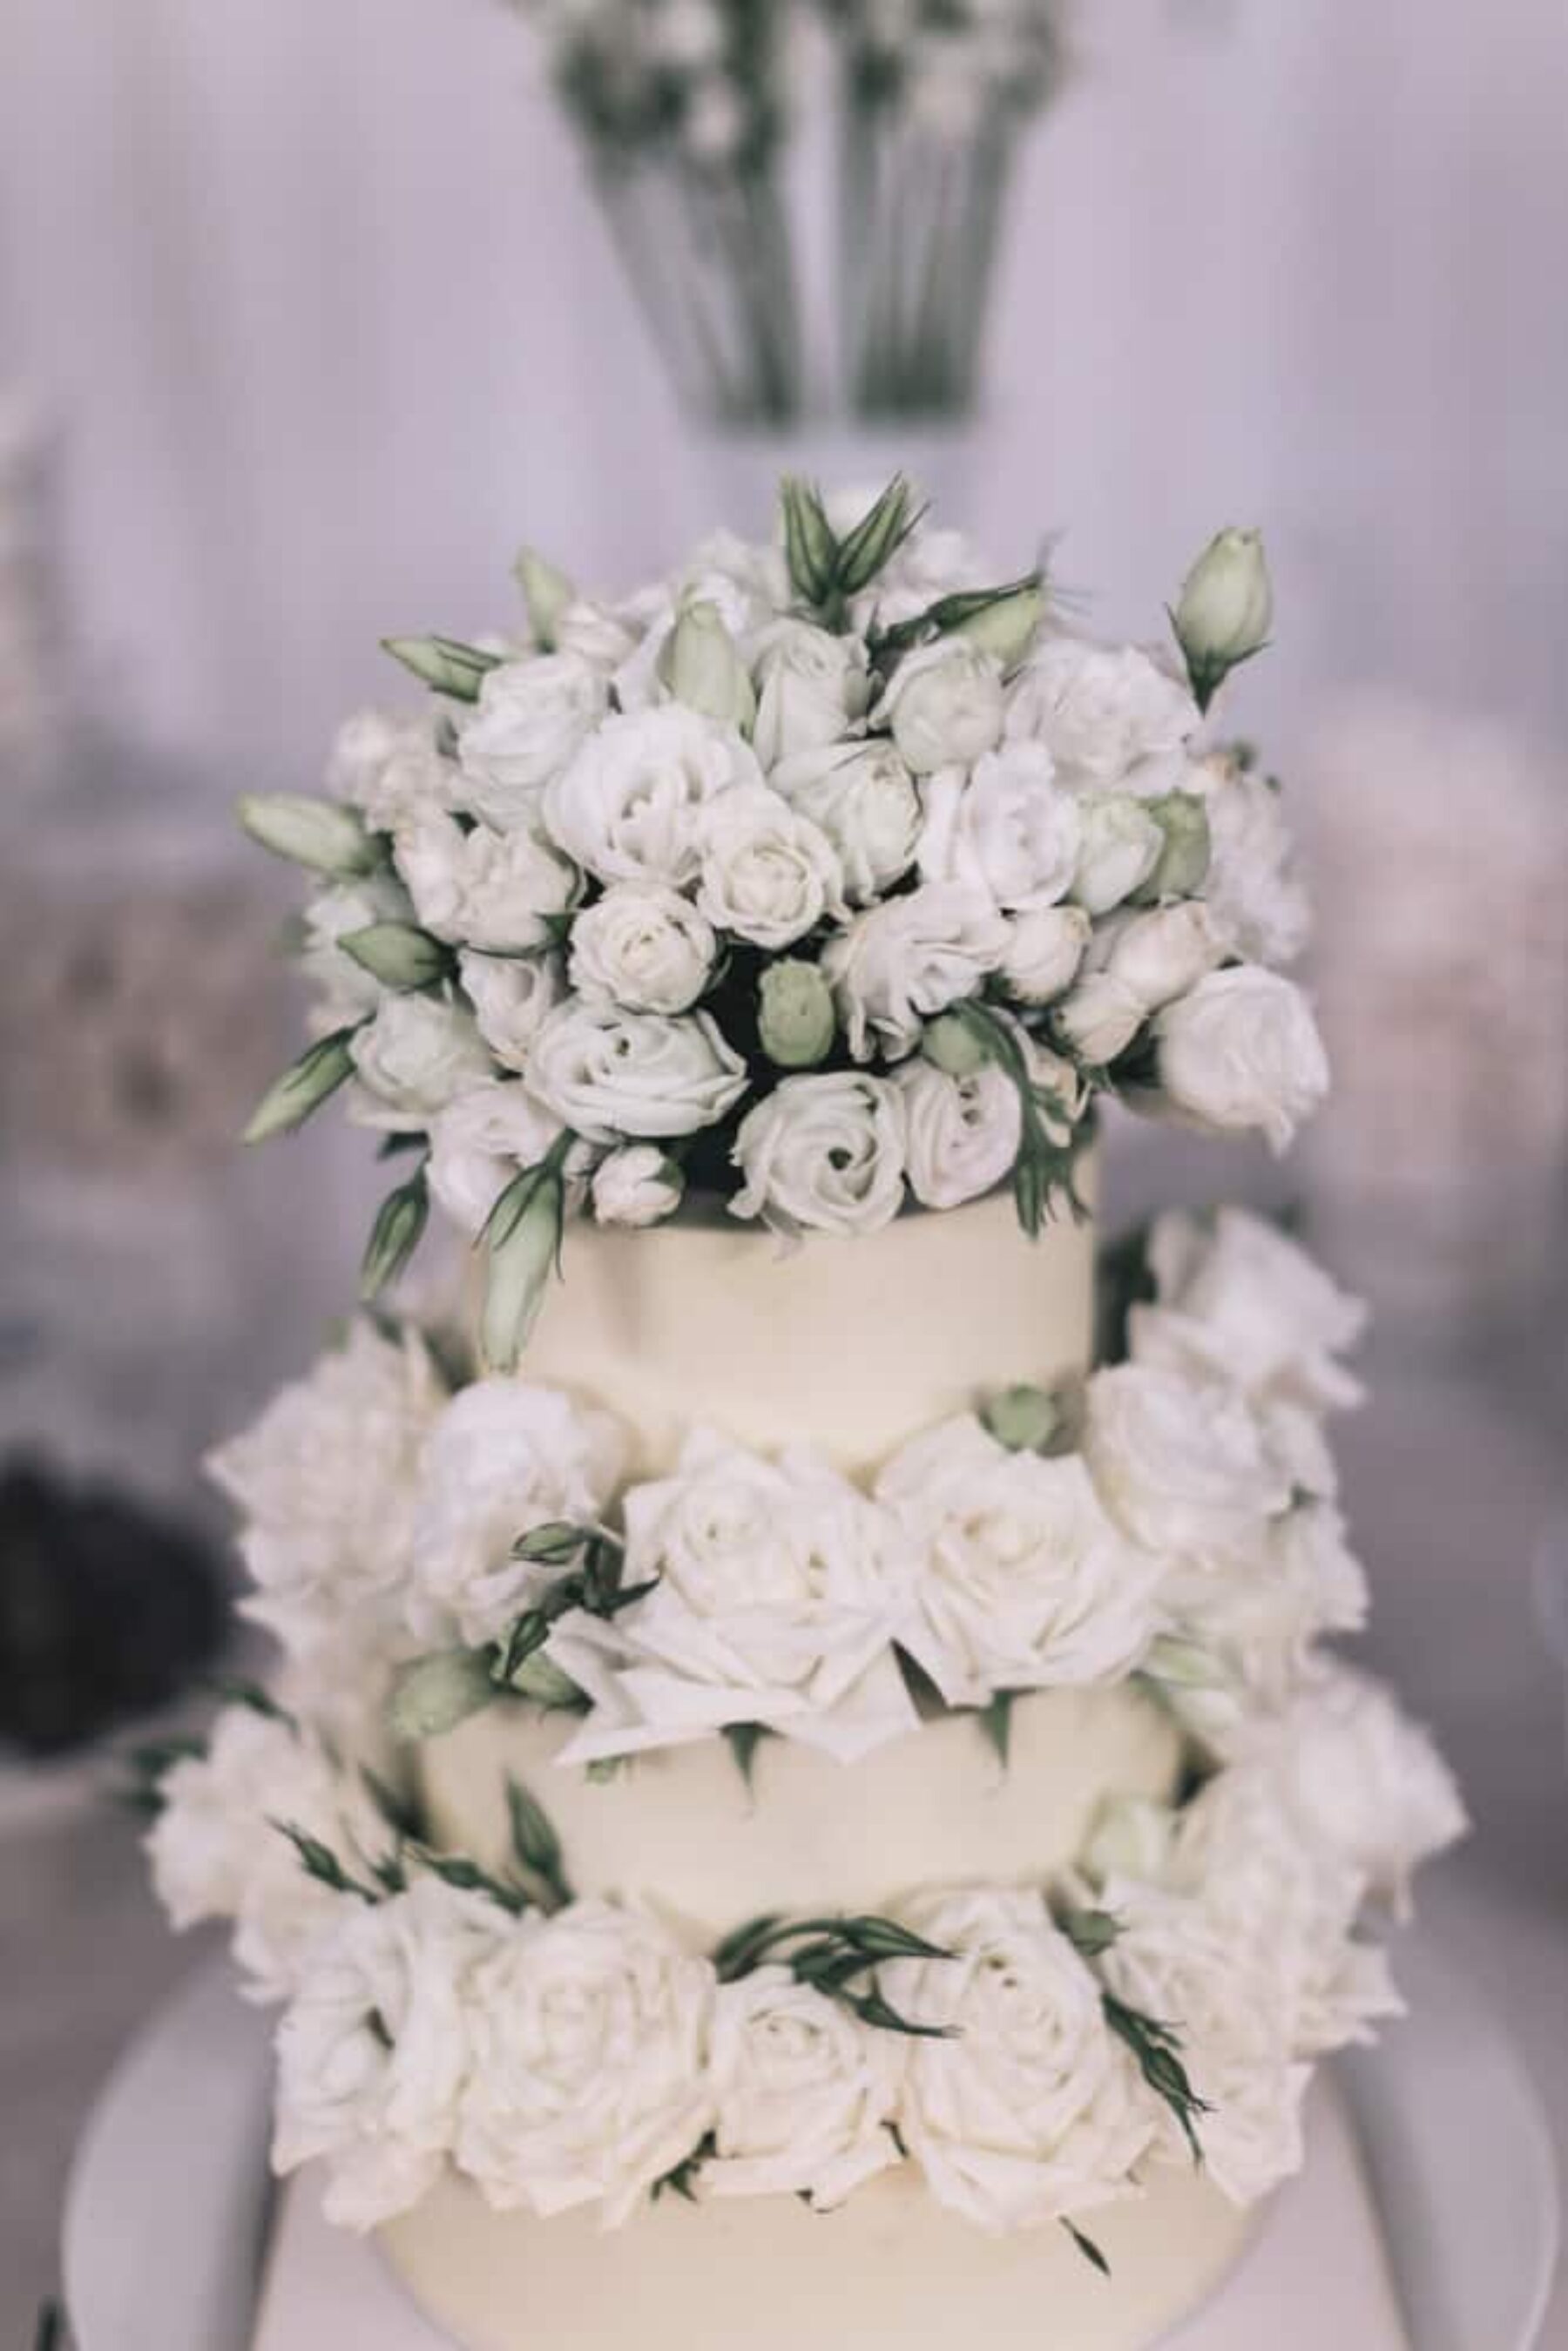 wedding cake dressed with fresh white roses